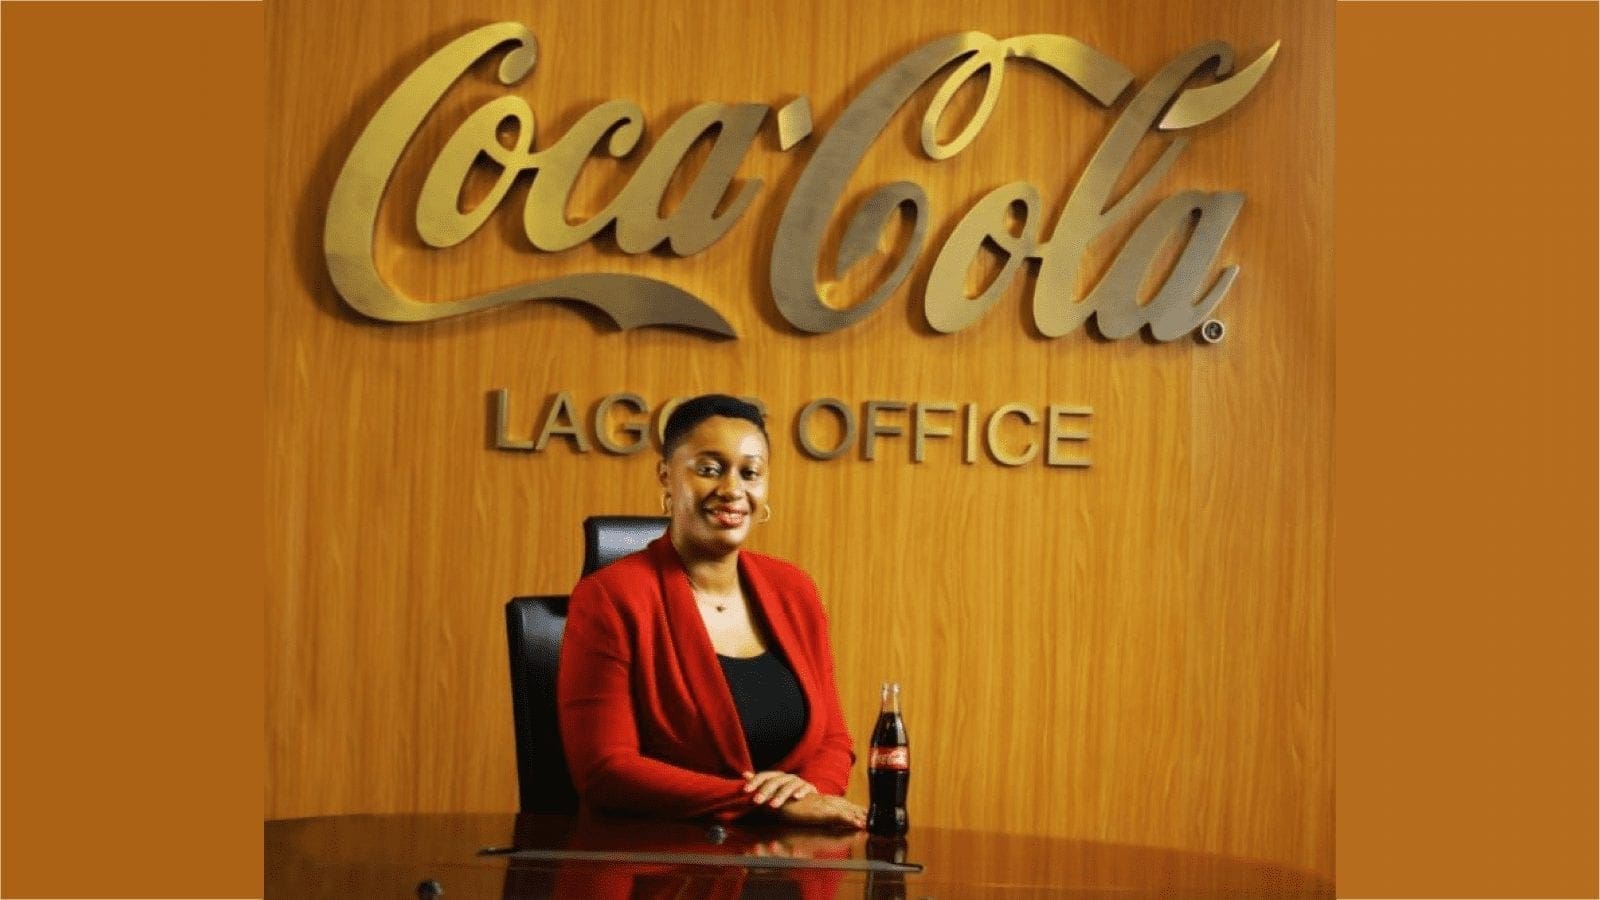 Coca-Cola Nigeria elevates Amaka Onyemelukwe to be Director Public Affairs, Communications & Sustainability